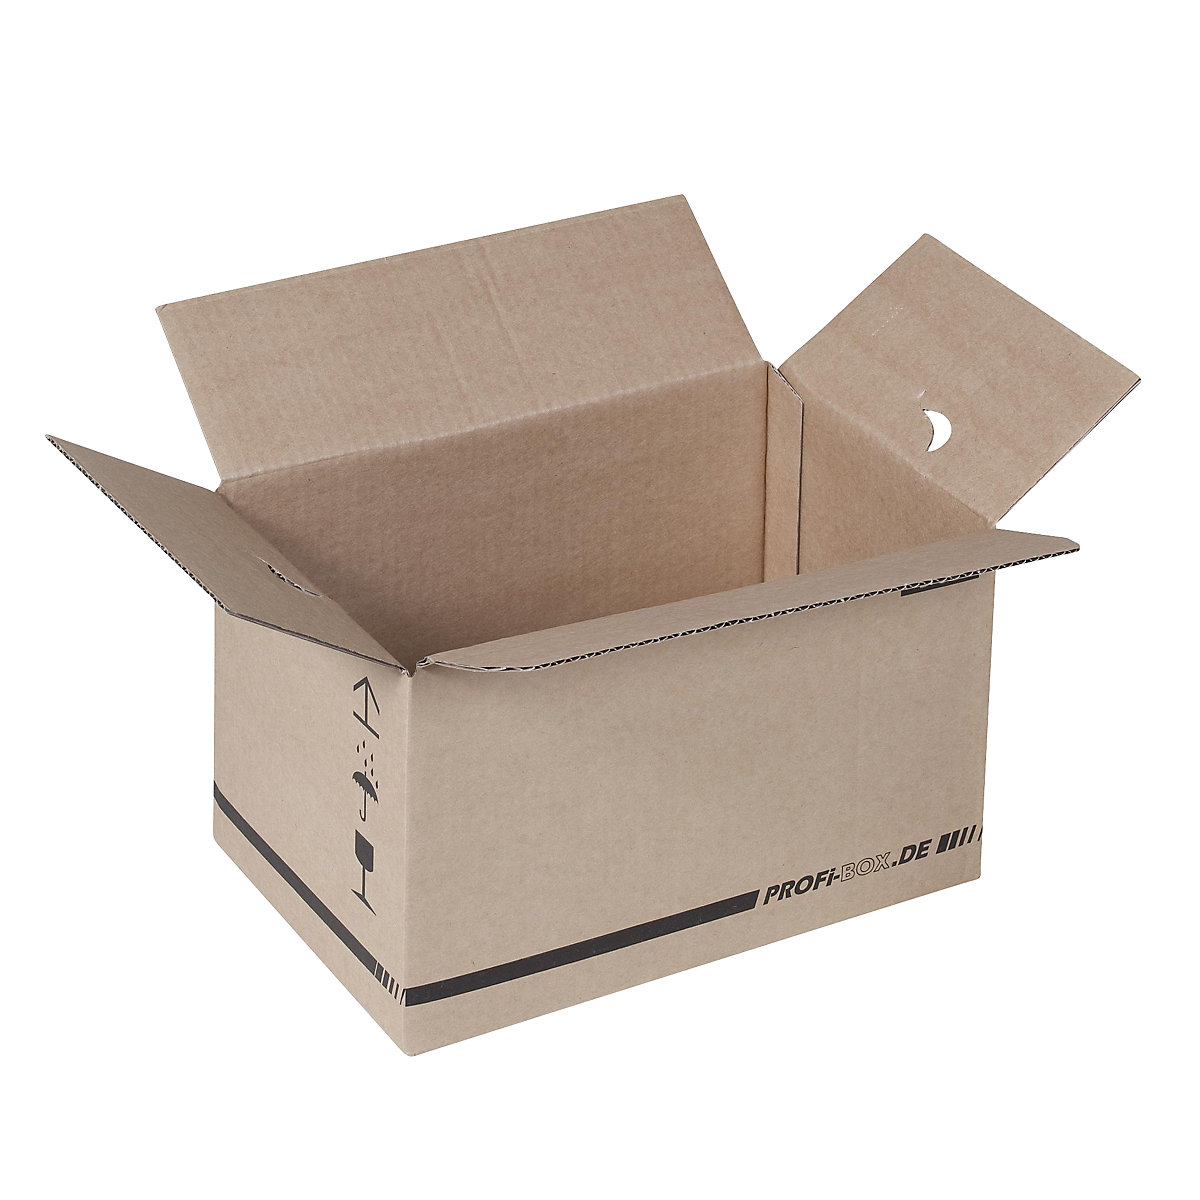 Profi-Boxen, aus 1-welliger Pappe, FEFCO 0701, Innenmaße 284 x 184 x 167 mm, VE 50 Stk-4